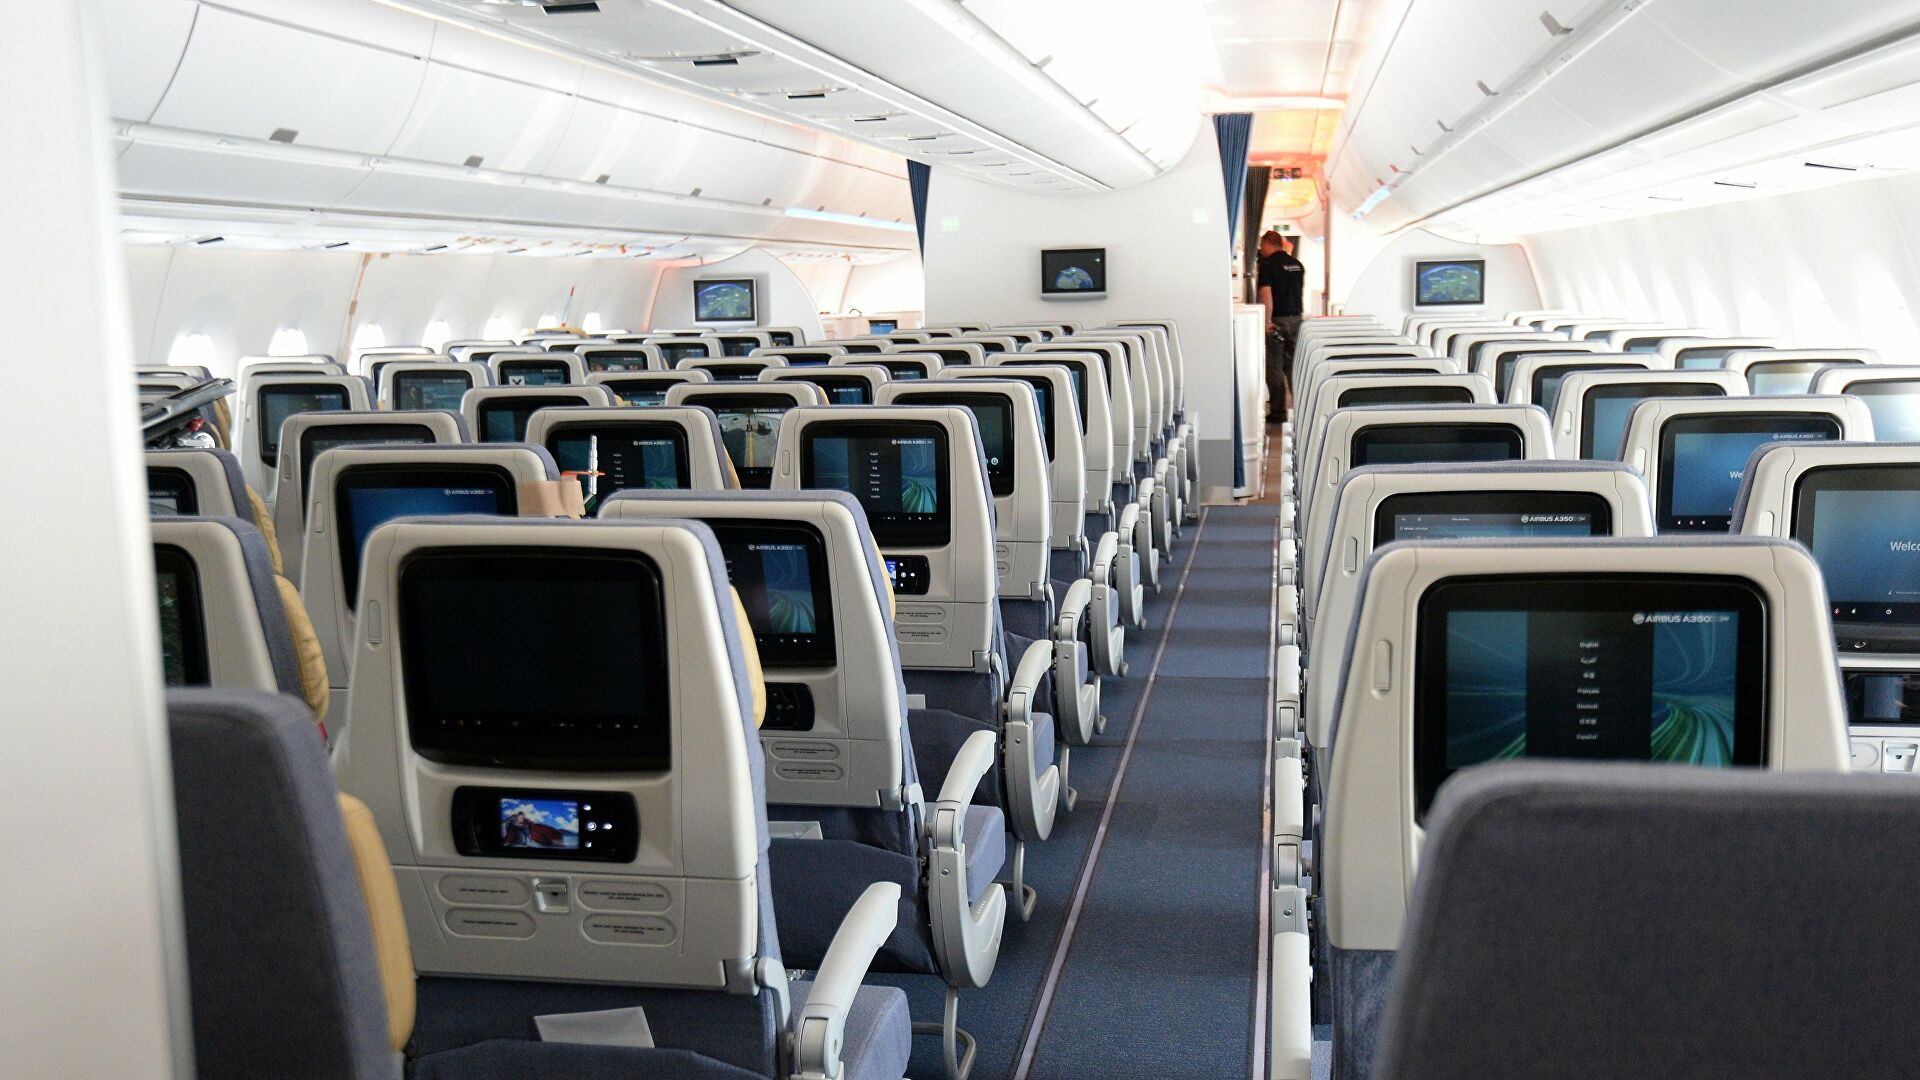 Неожиданная поза стюардессы в самолете поразила пользователей Сети - ФОТО